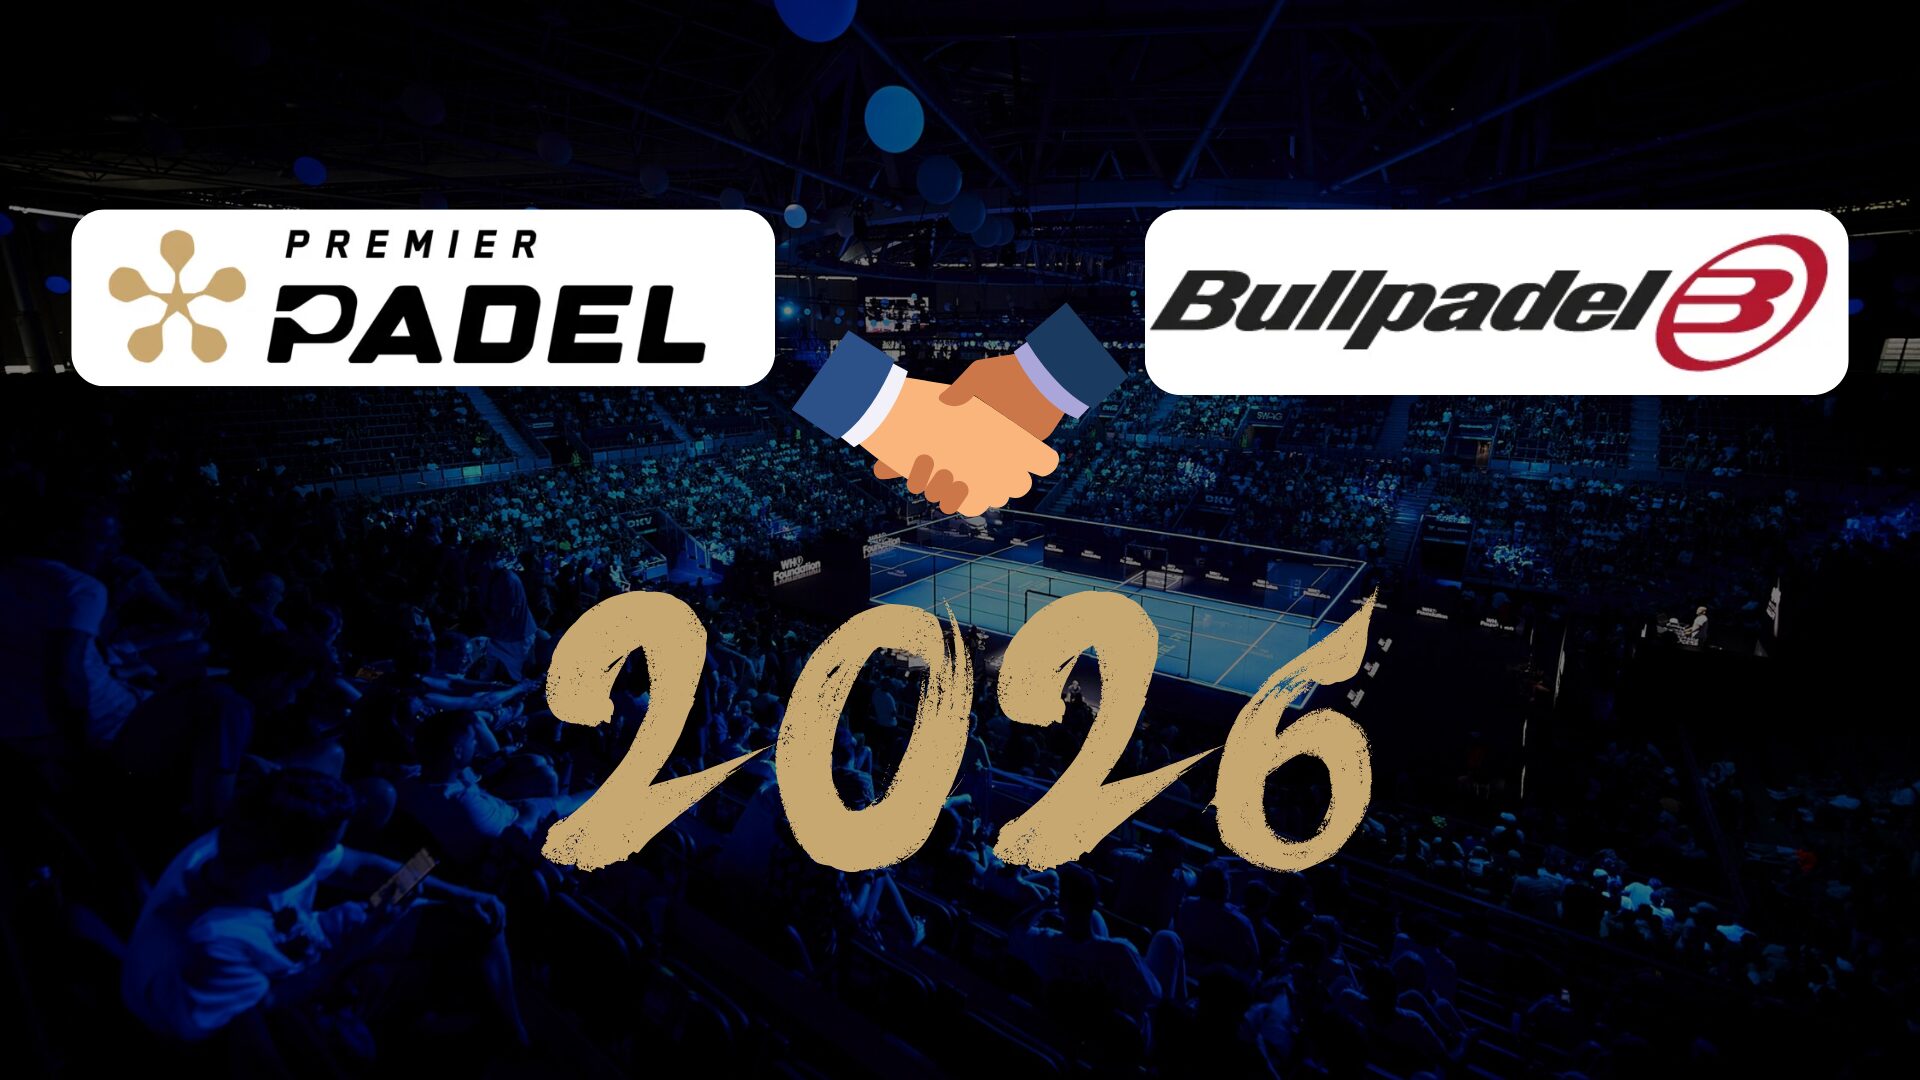 Bullpadel fornirà le racchette ufficiali di Premier Padel fino al 2026!